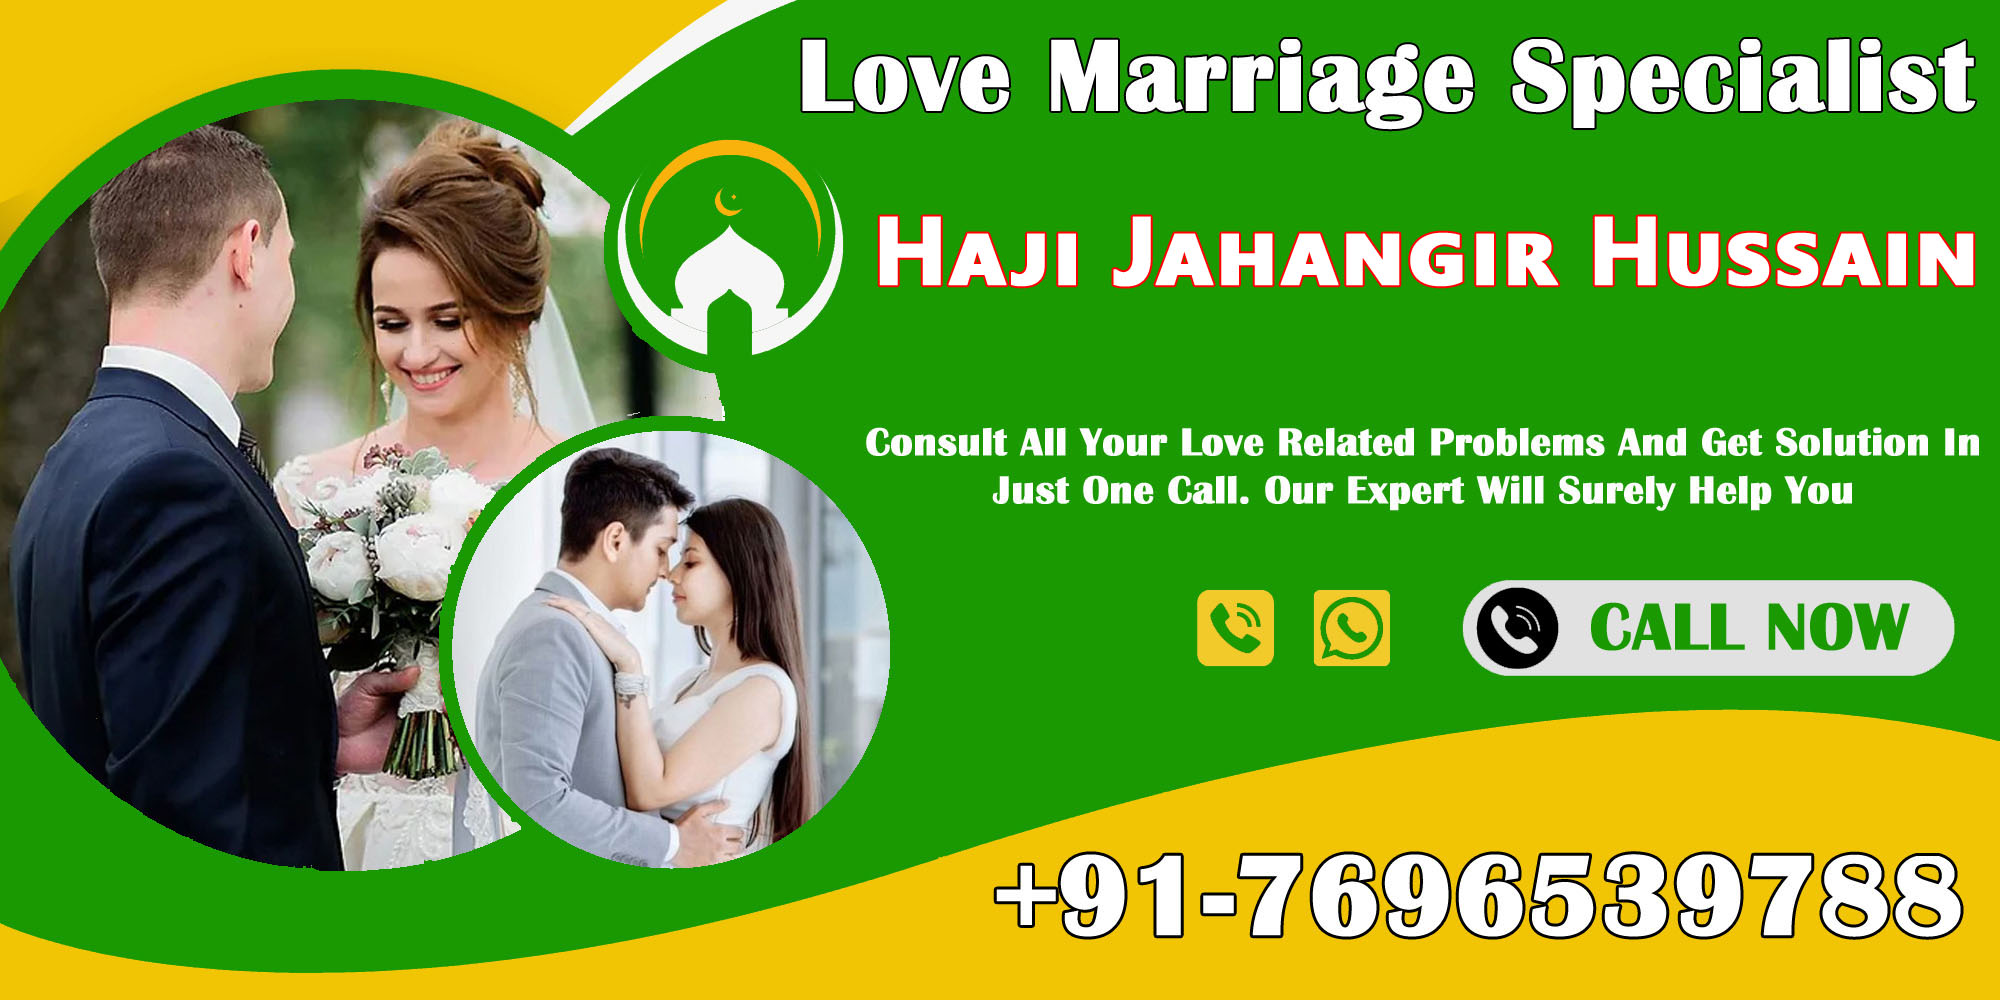 World Famous Haji Jahangir Hussain Ji +91-7696539788